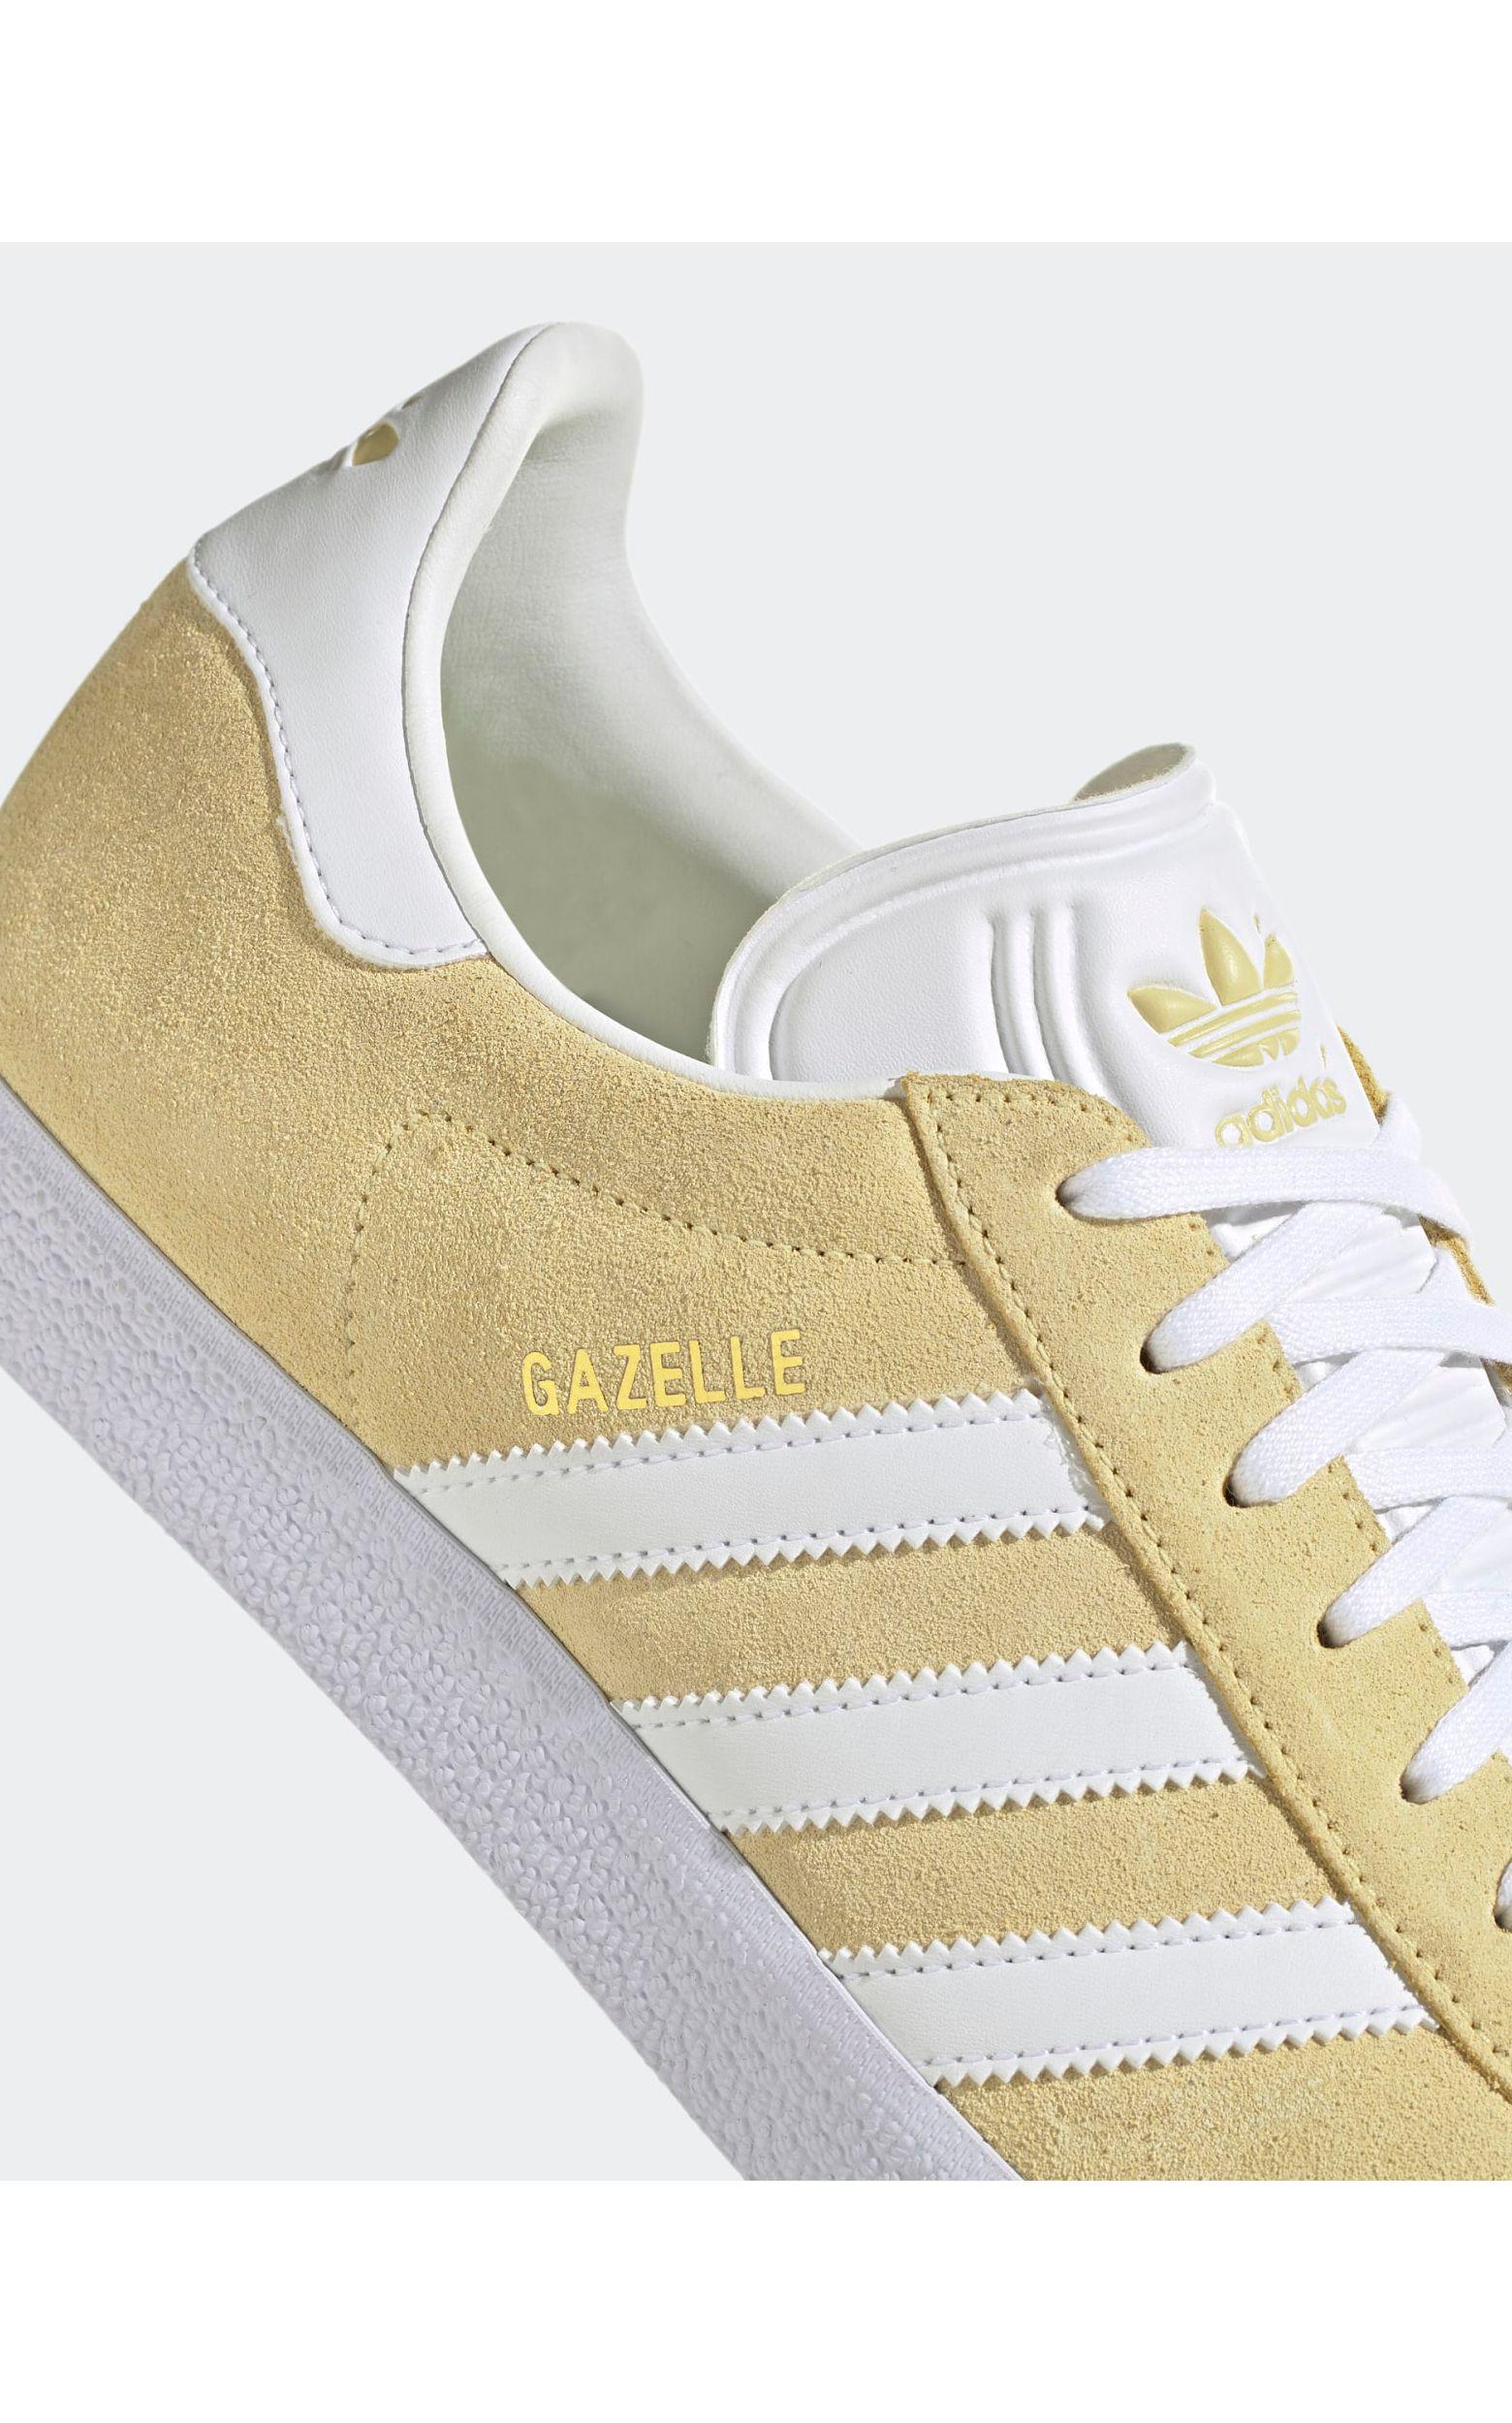 adidas Originals 'gazelle' Sneakers in Yellow for Men | Lyst UK